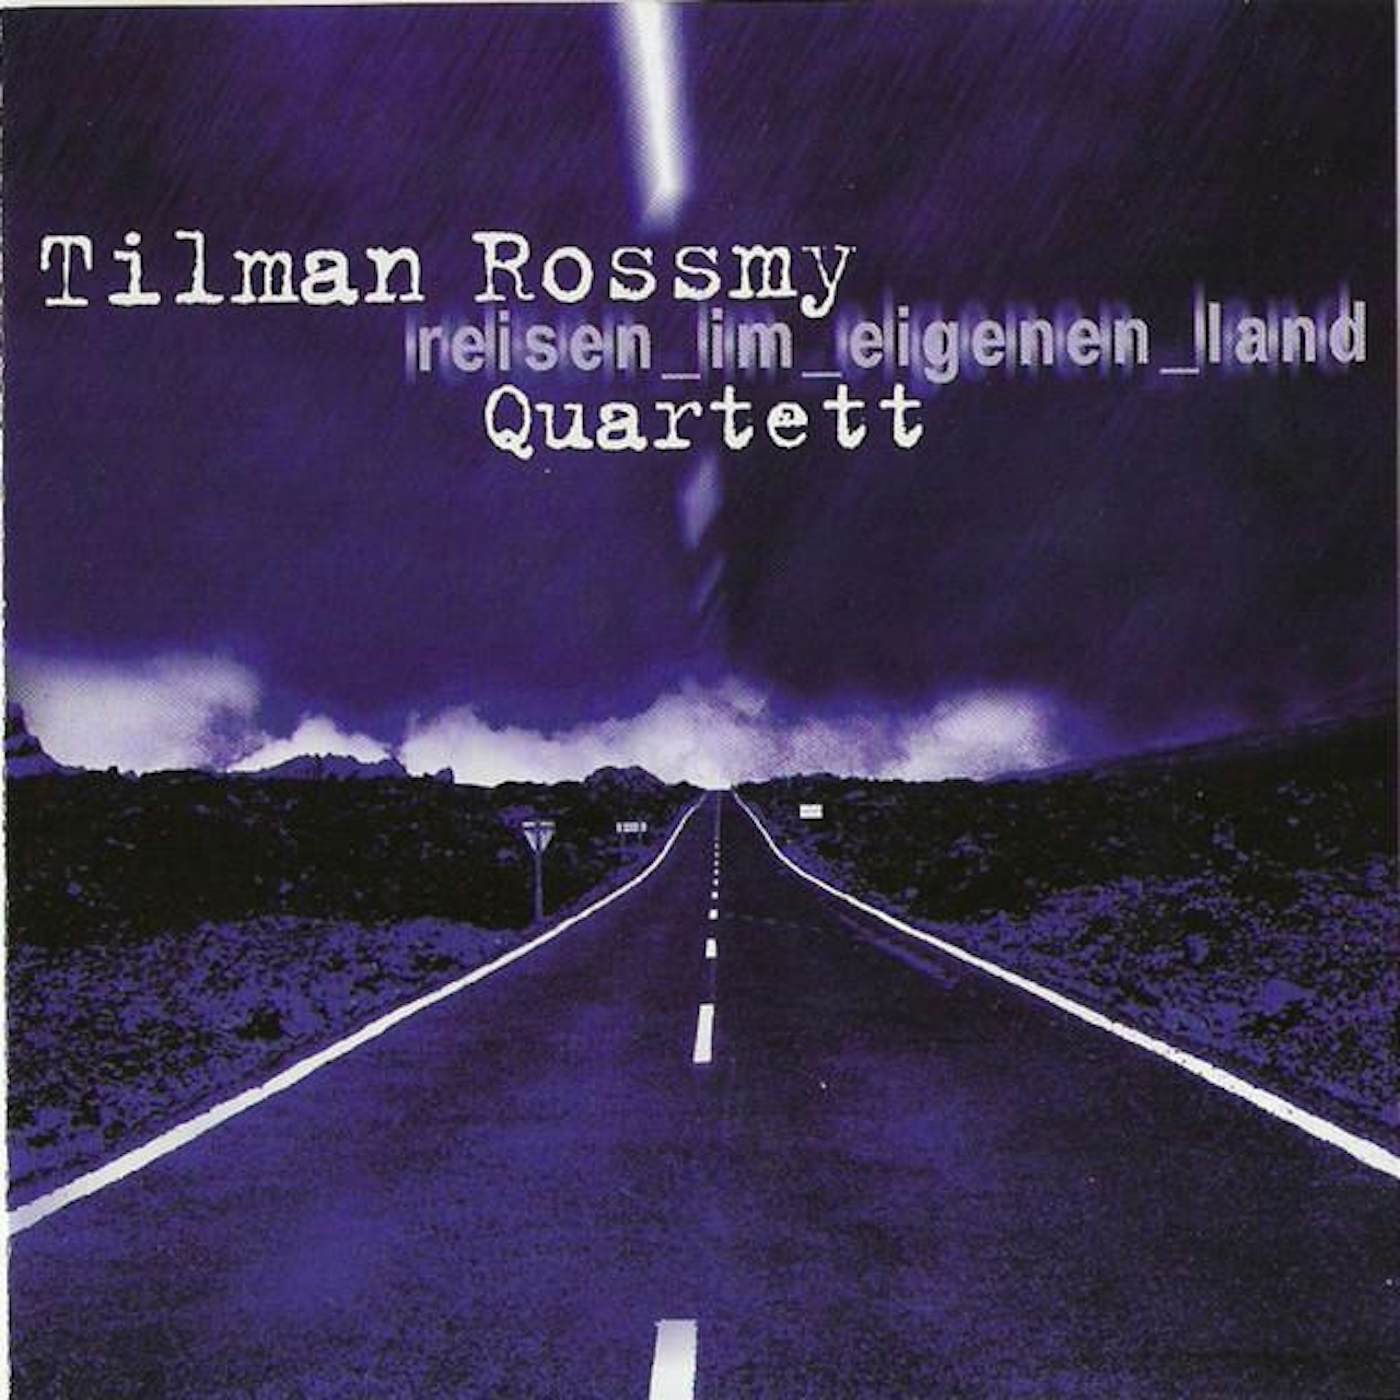 Tilman Rossmy Quartett